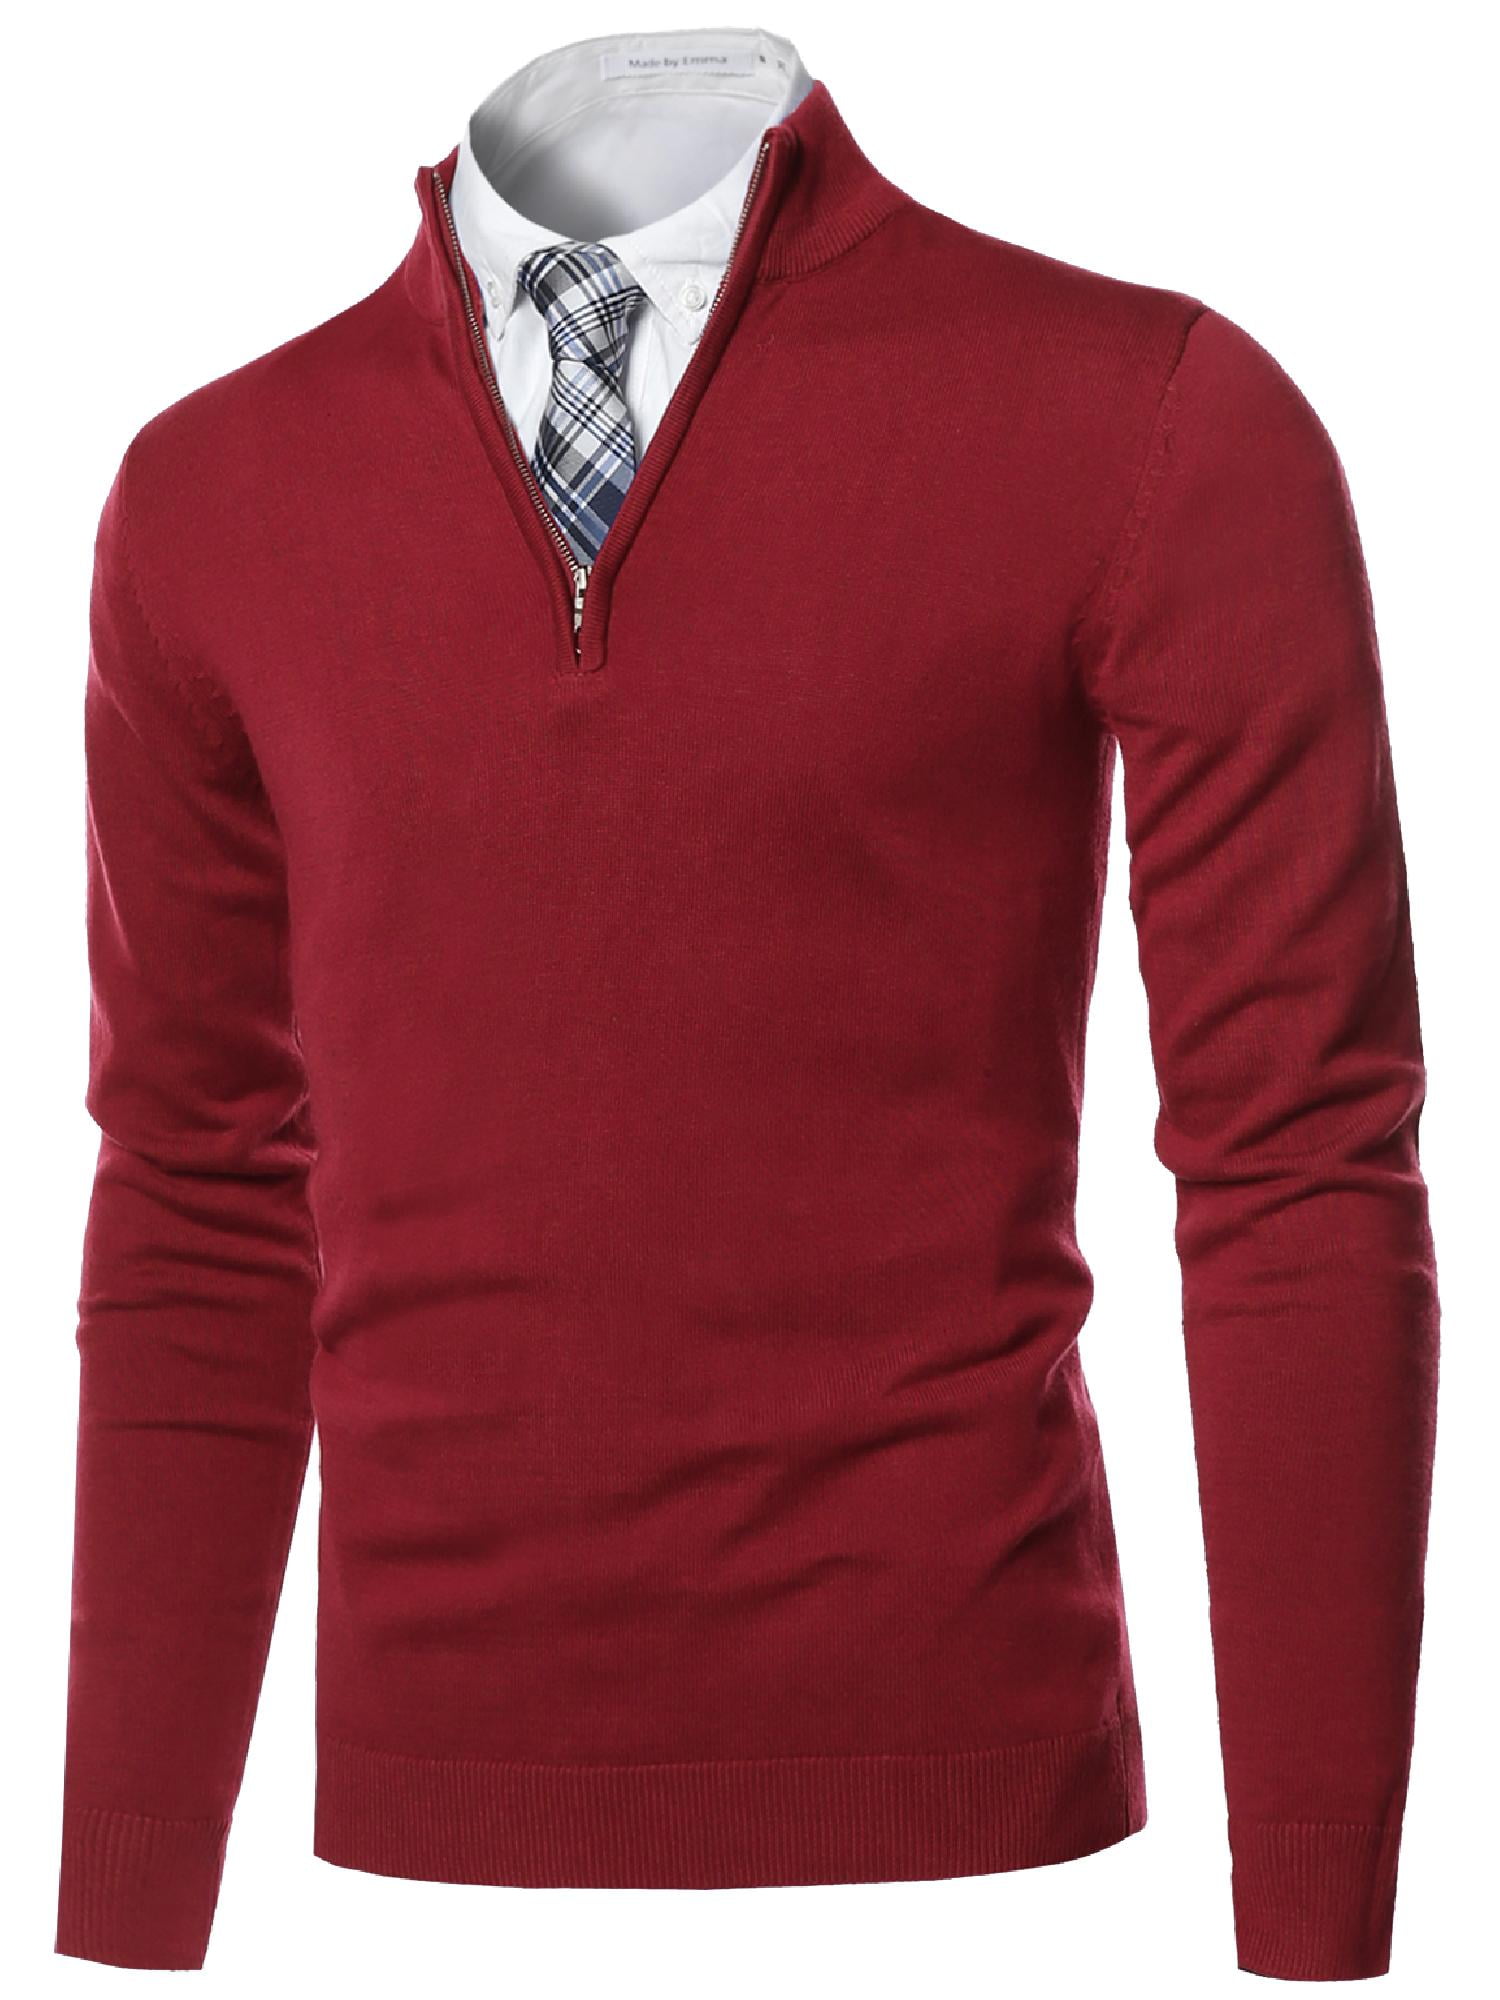 Men's Classic Half Zip Up Mock Neck Basic Sweater Top - Walmart.com